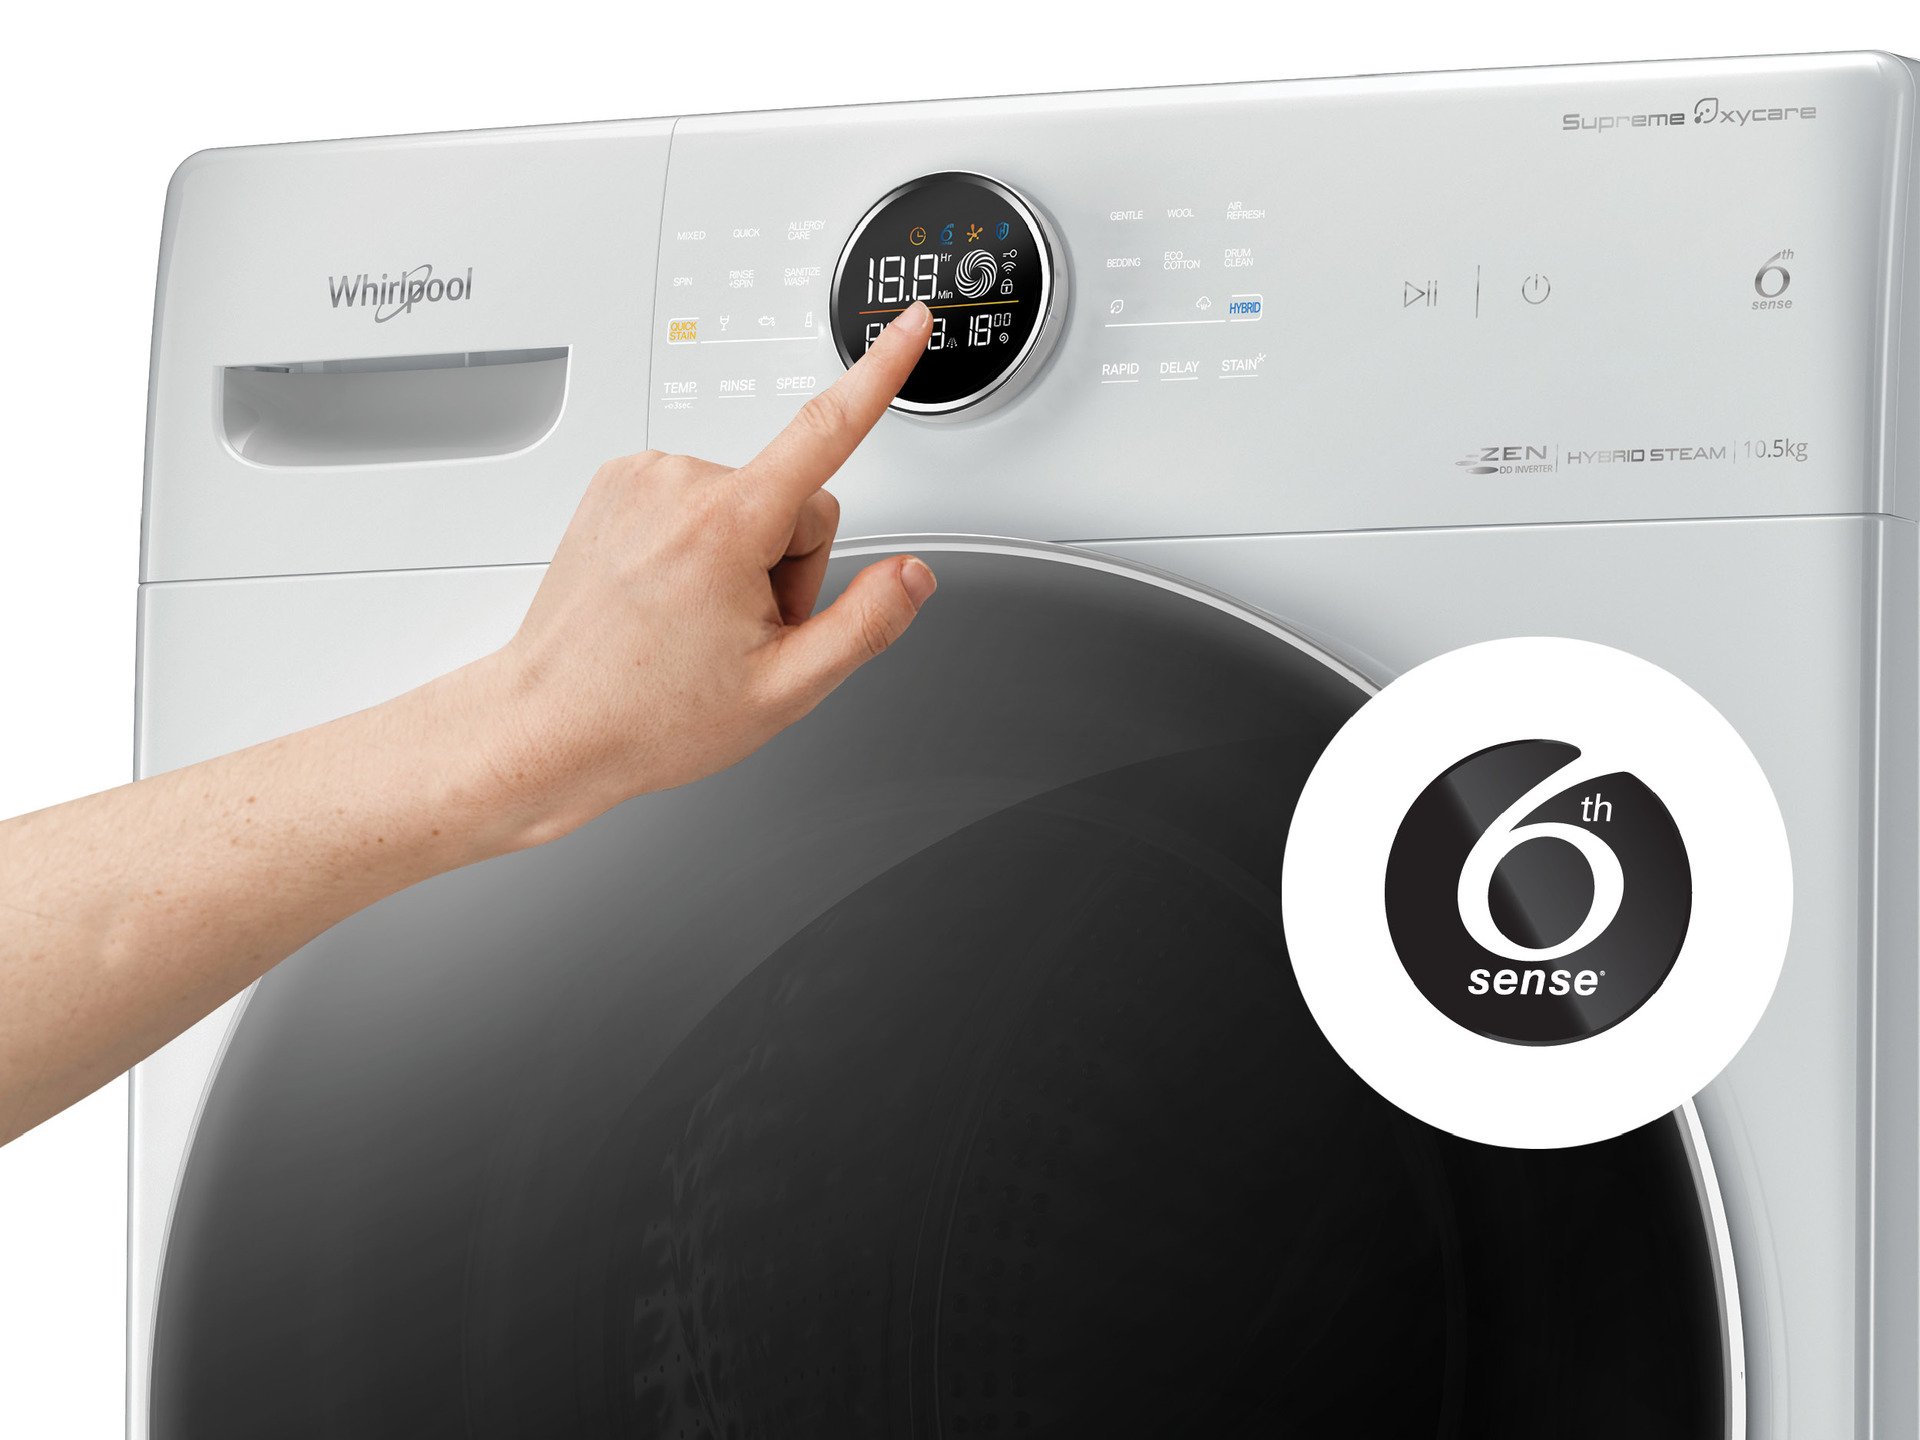 Máy giặt whirlpool chế độ tự động 6th sense